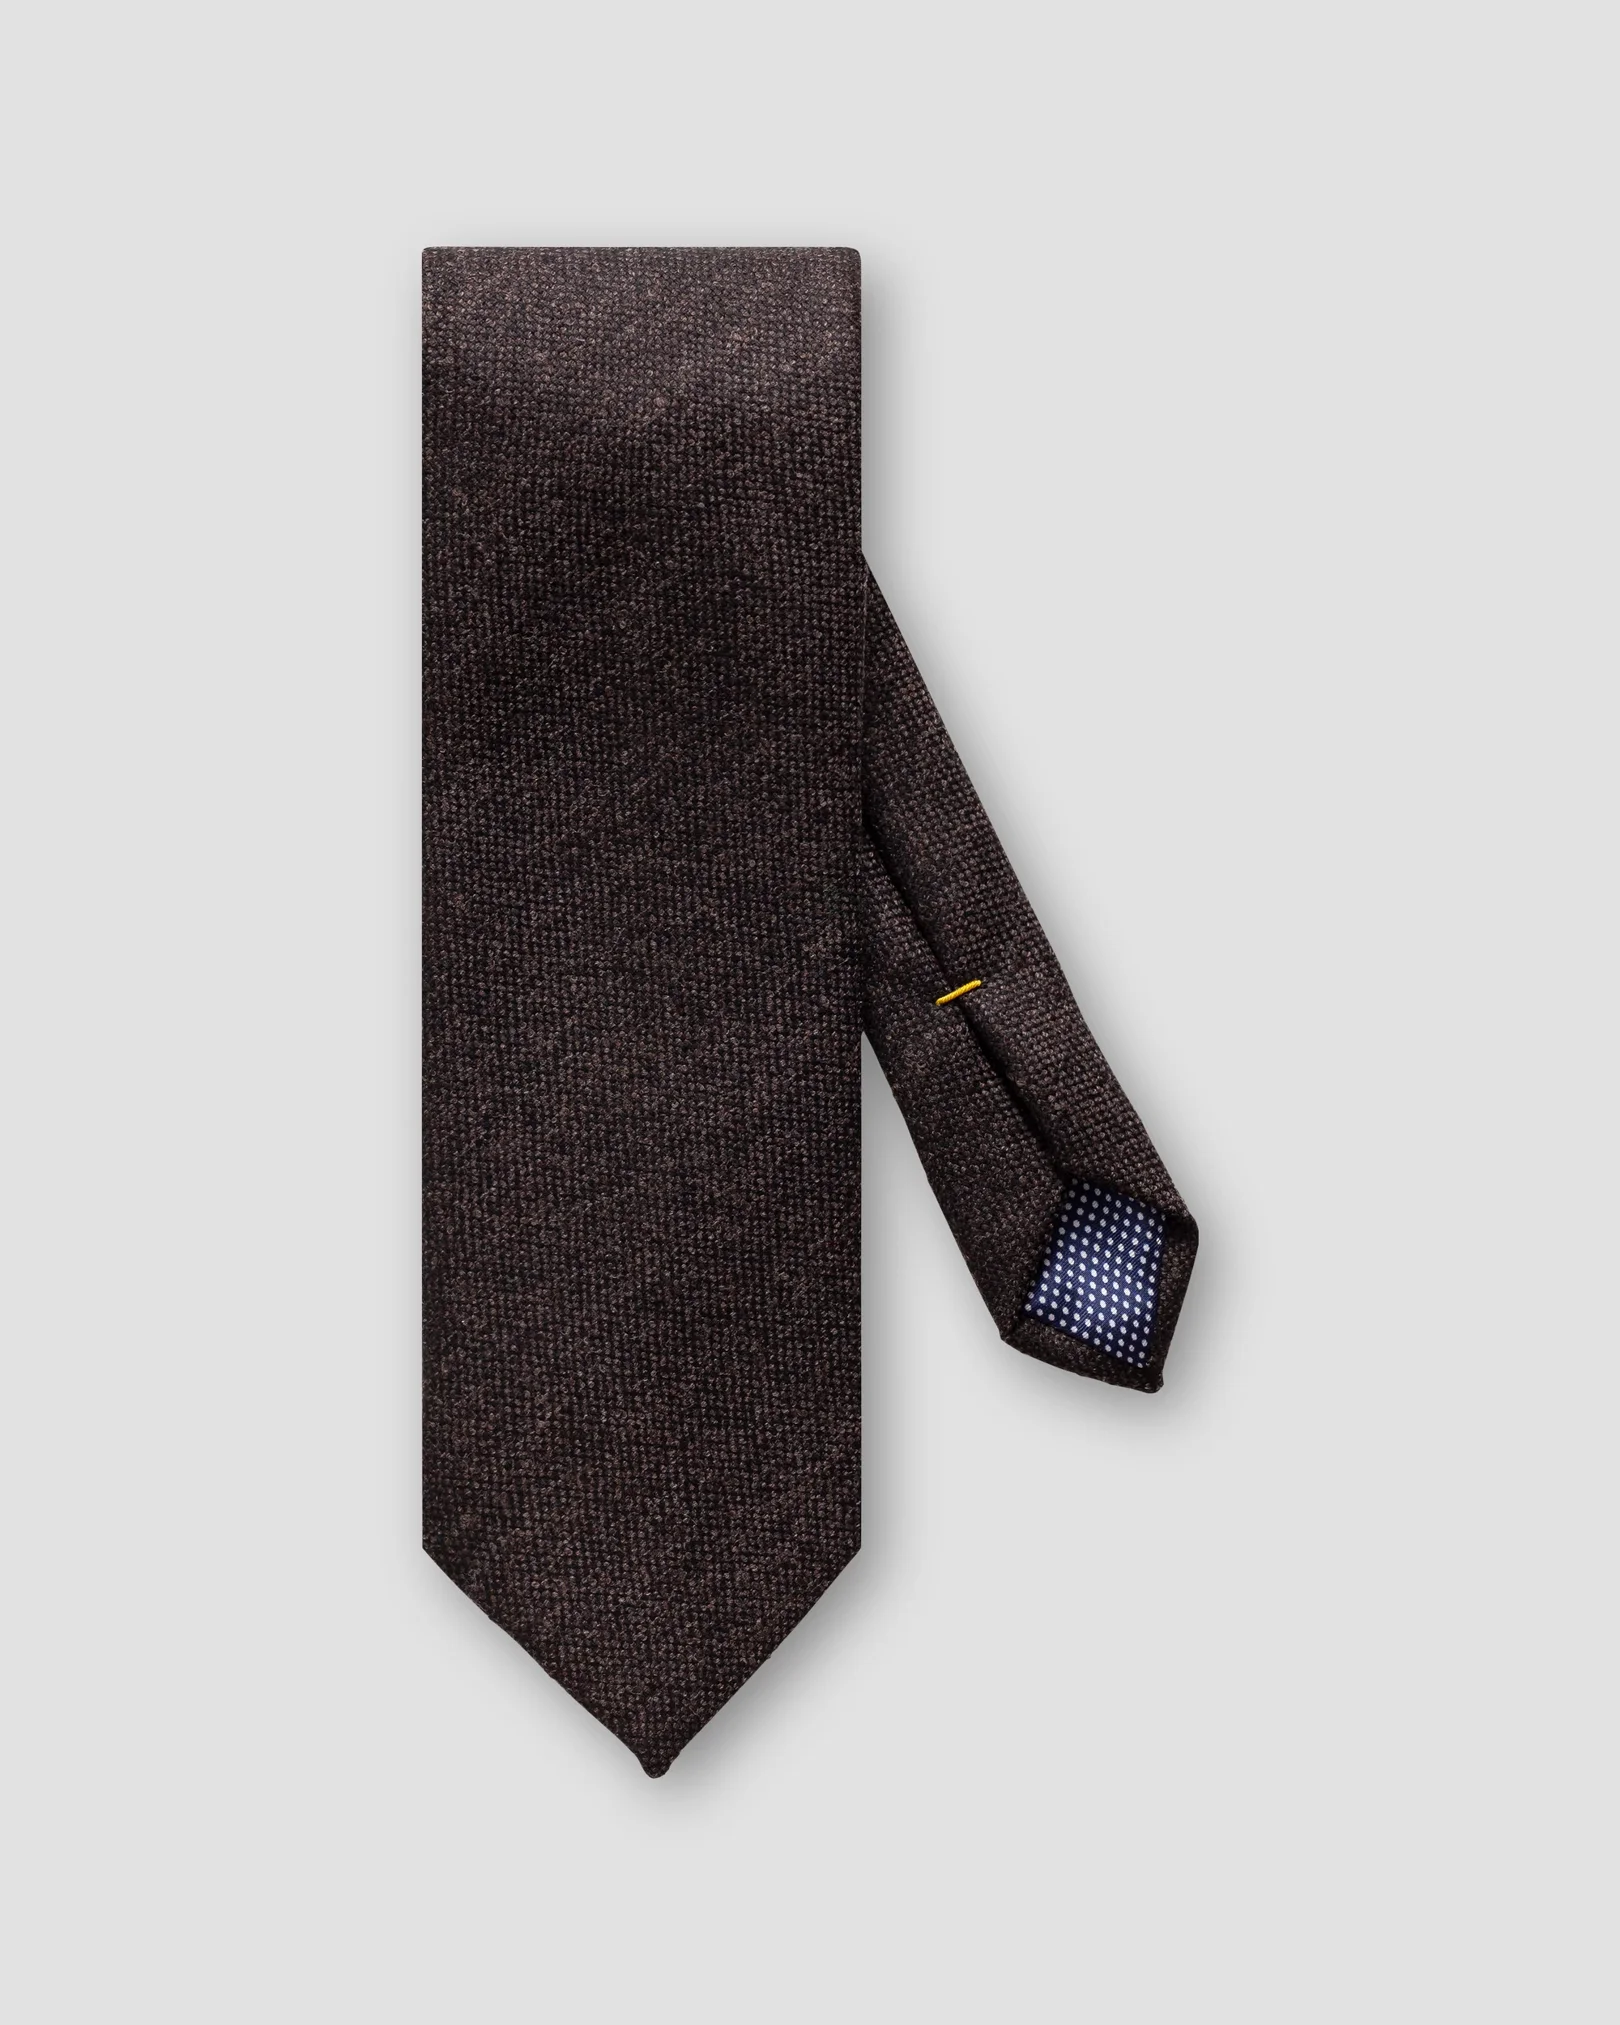 Eton - dark brown textured tie